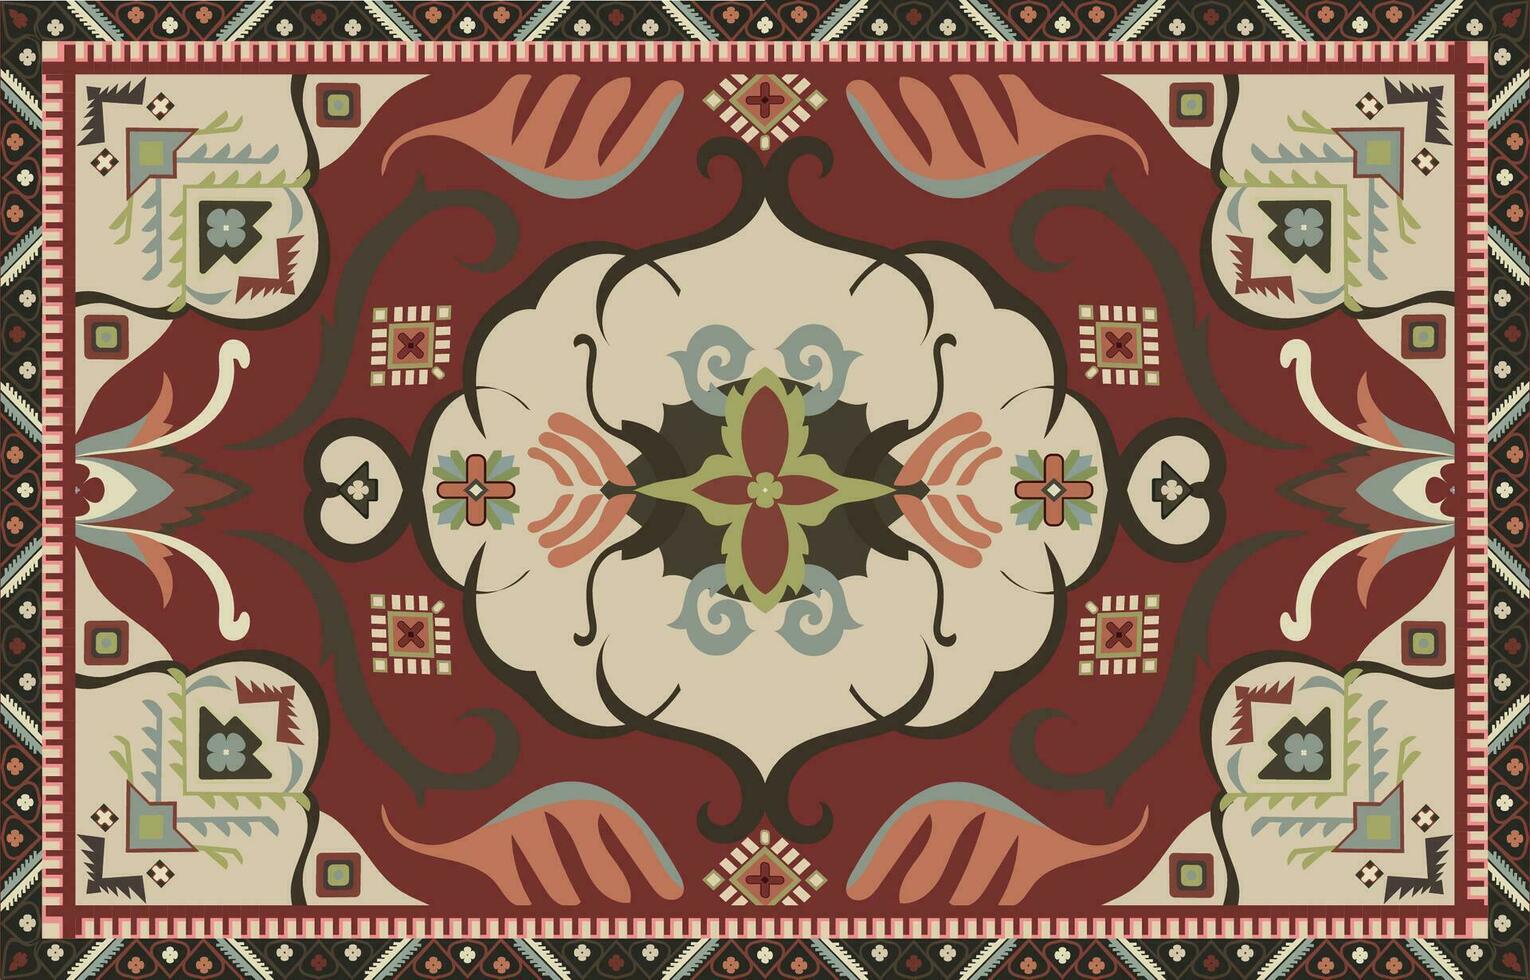 bunt Zier Vektor Design zum Teppich, Tapis, Yoga Matte. geometrisch ethnisch Clip Art. arabisch Zier Teppich mit dekorativ elements.persian Teppich,